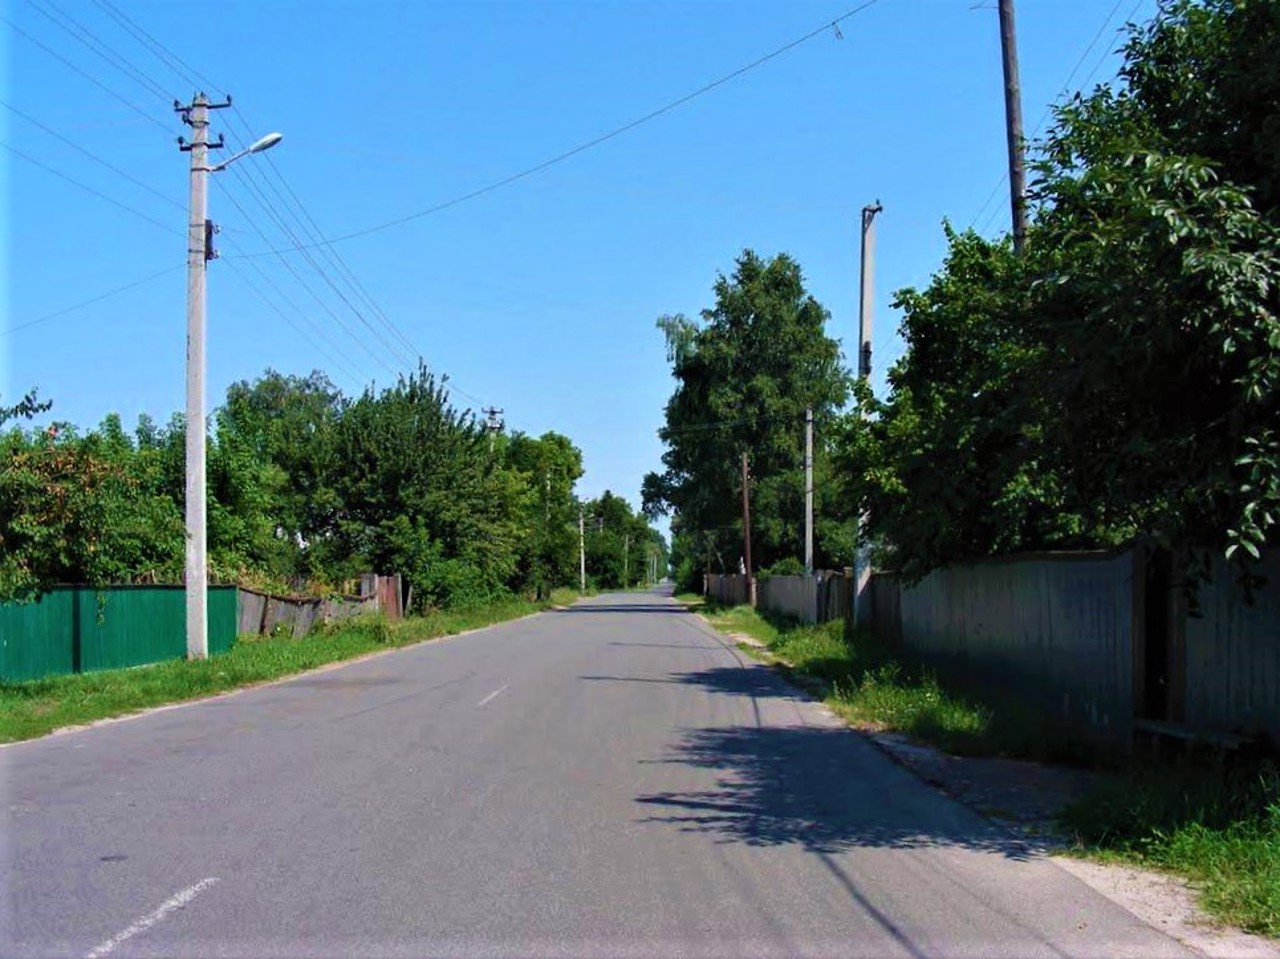 Vertiivka village, Chernihiv region